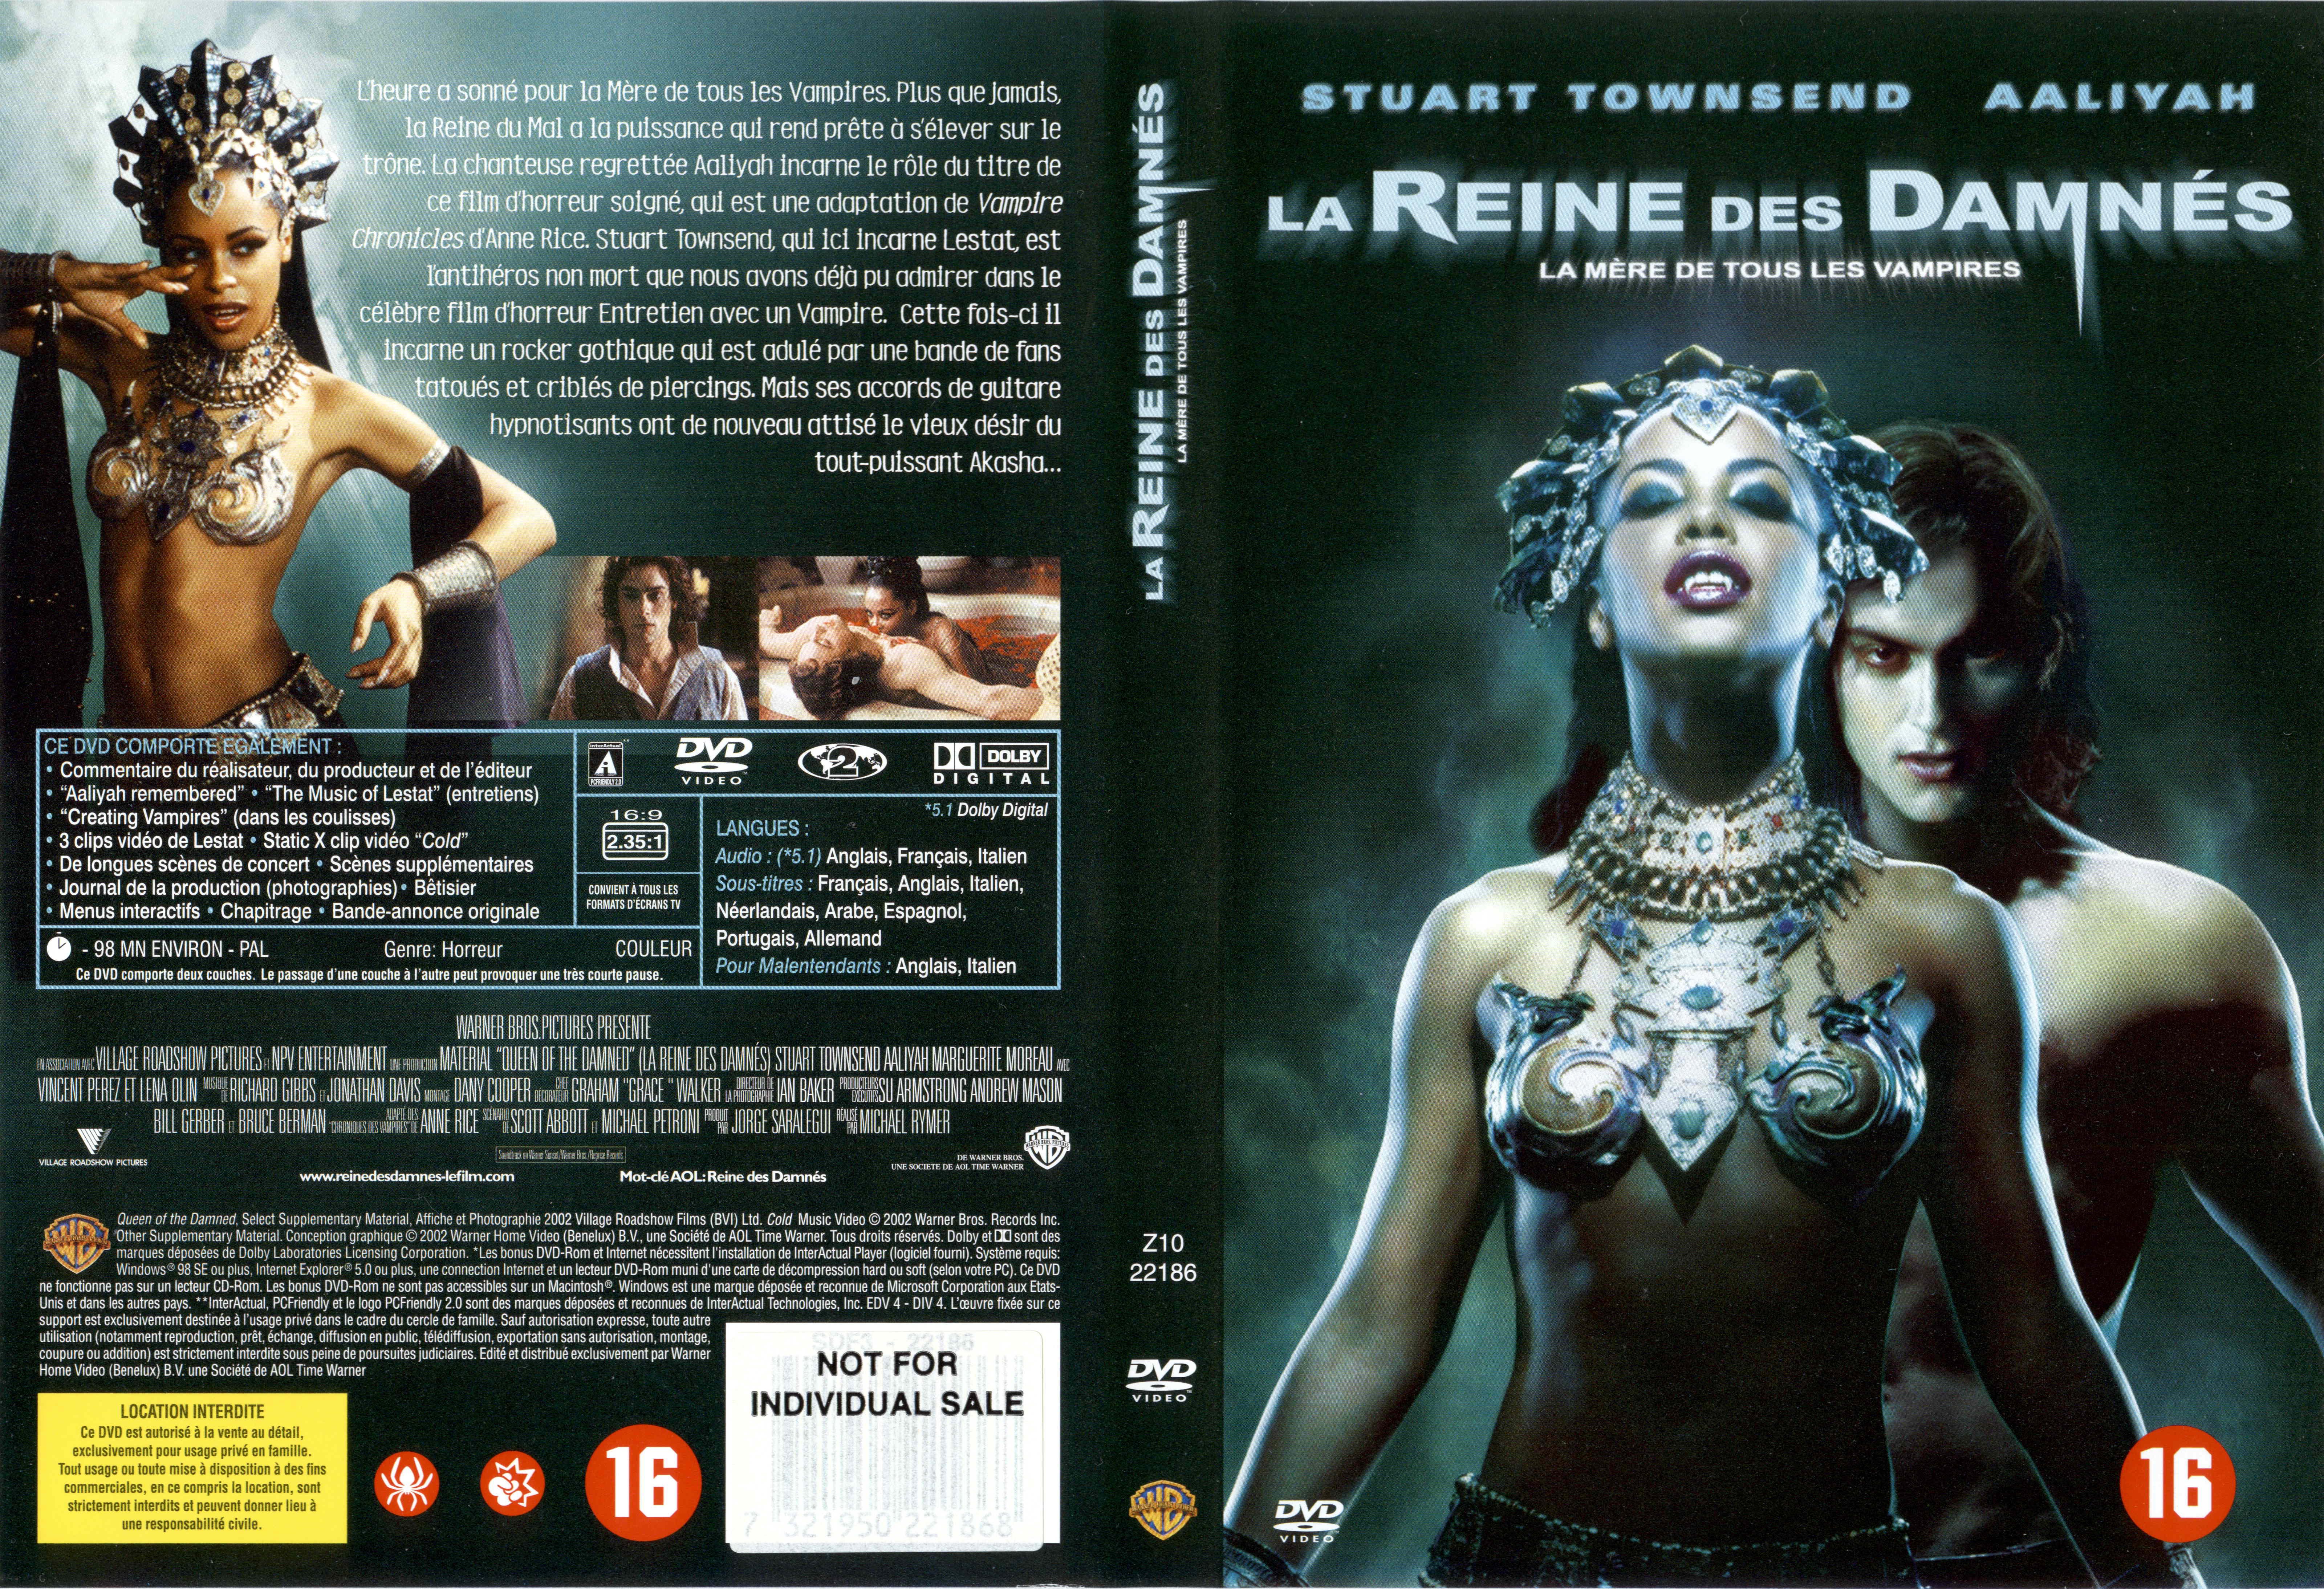 Jaquette DVD La reine des damns v2